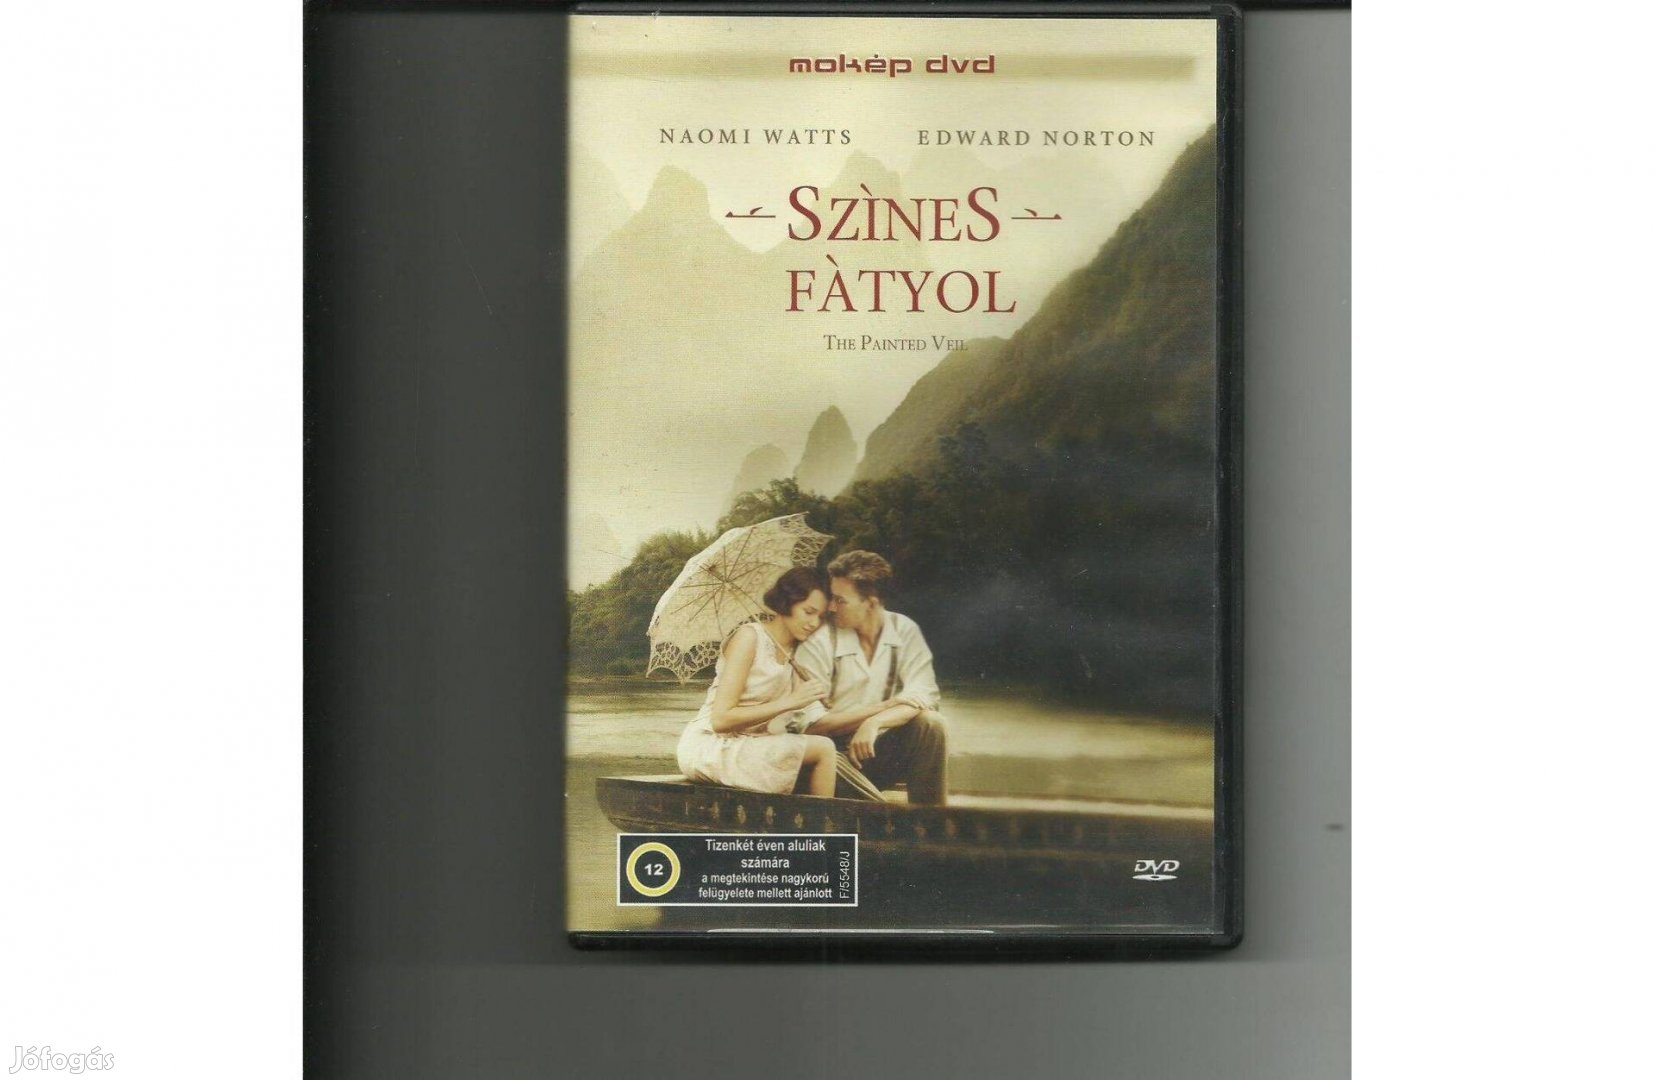 Színes fátyol című DVD eladó ( Naomi Watts-Edward Norton)